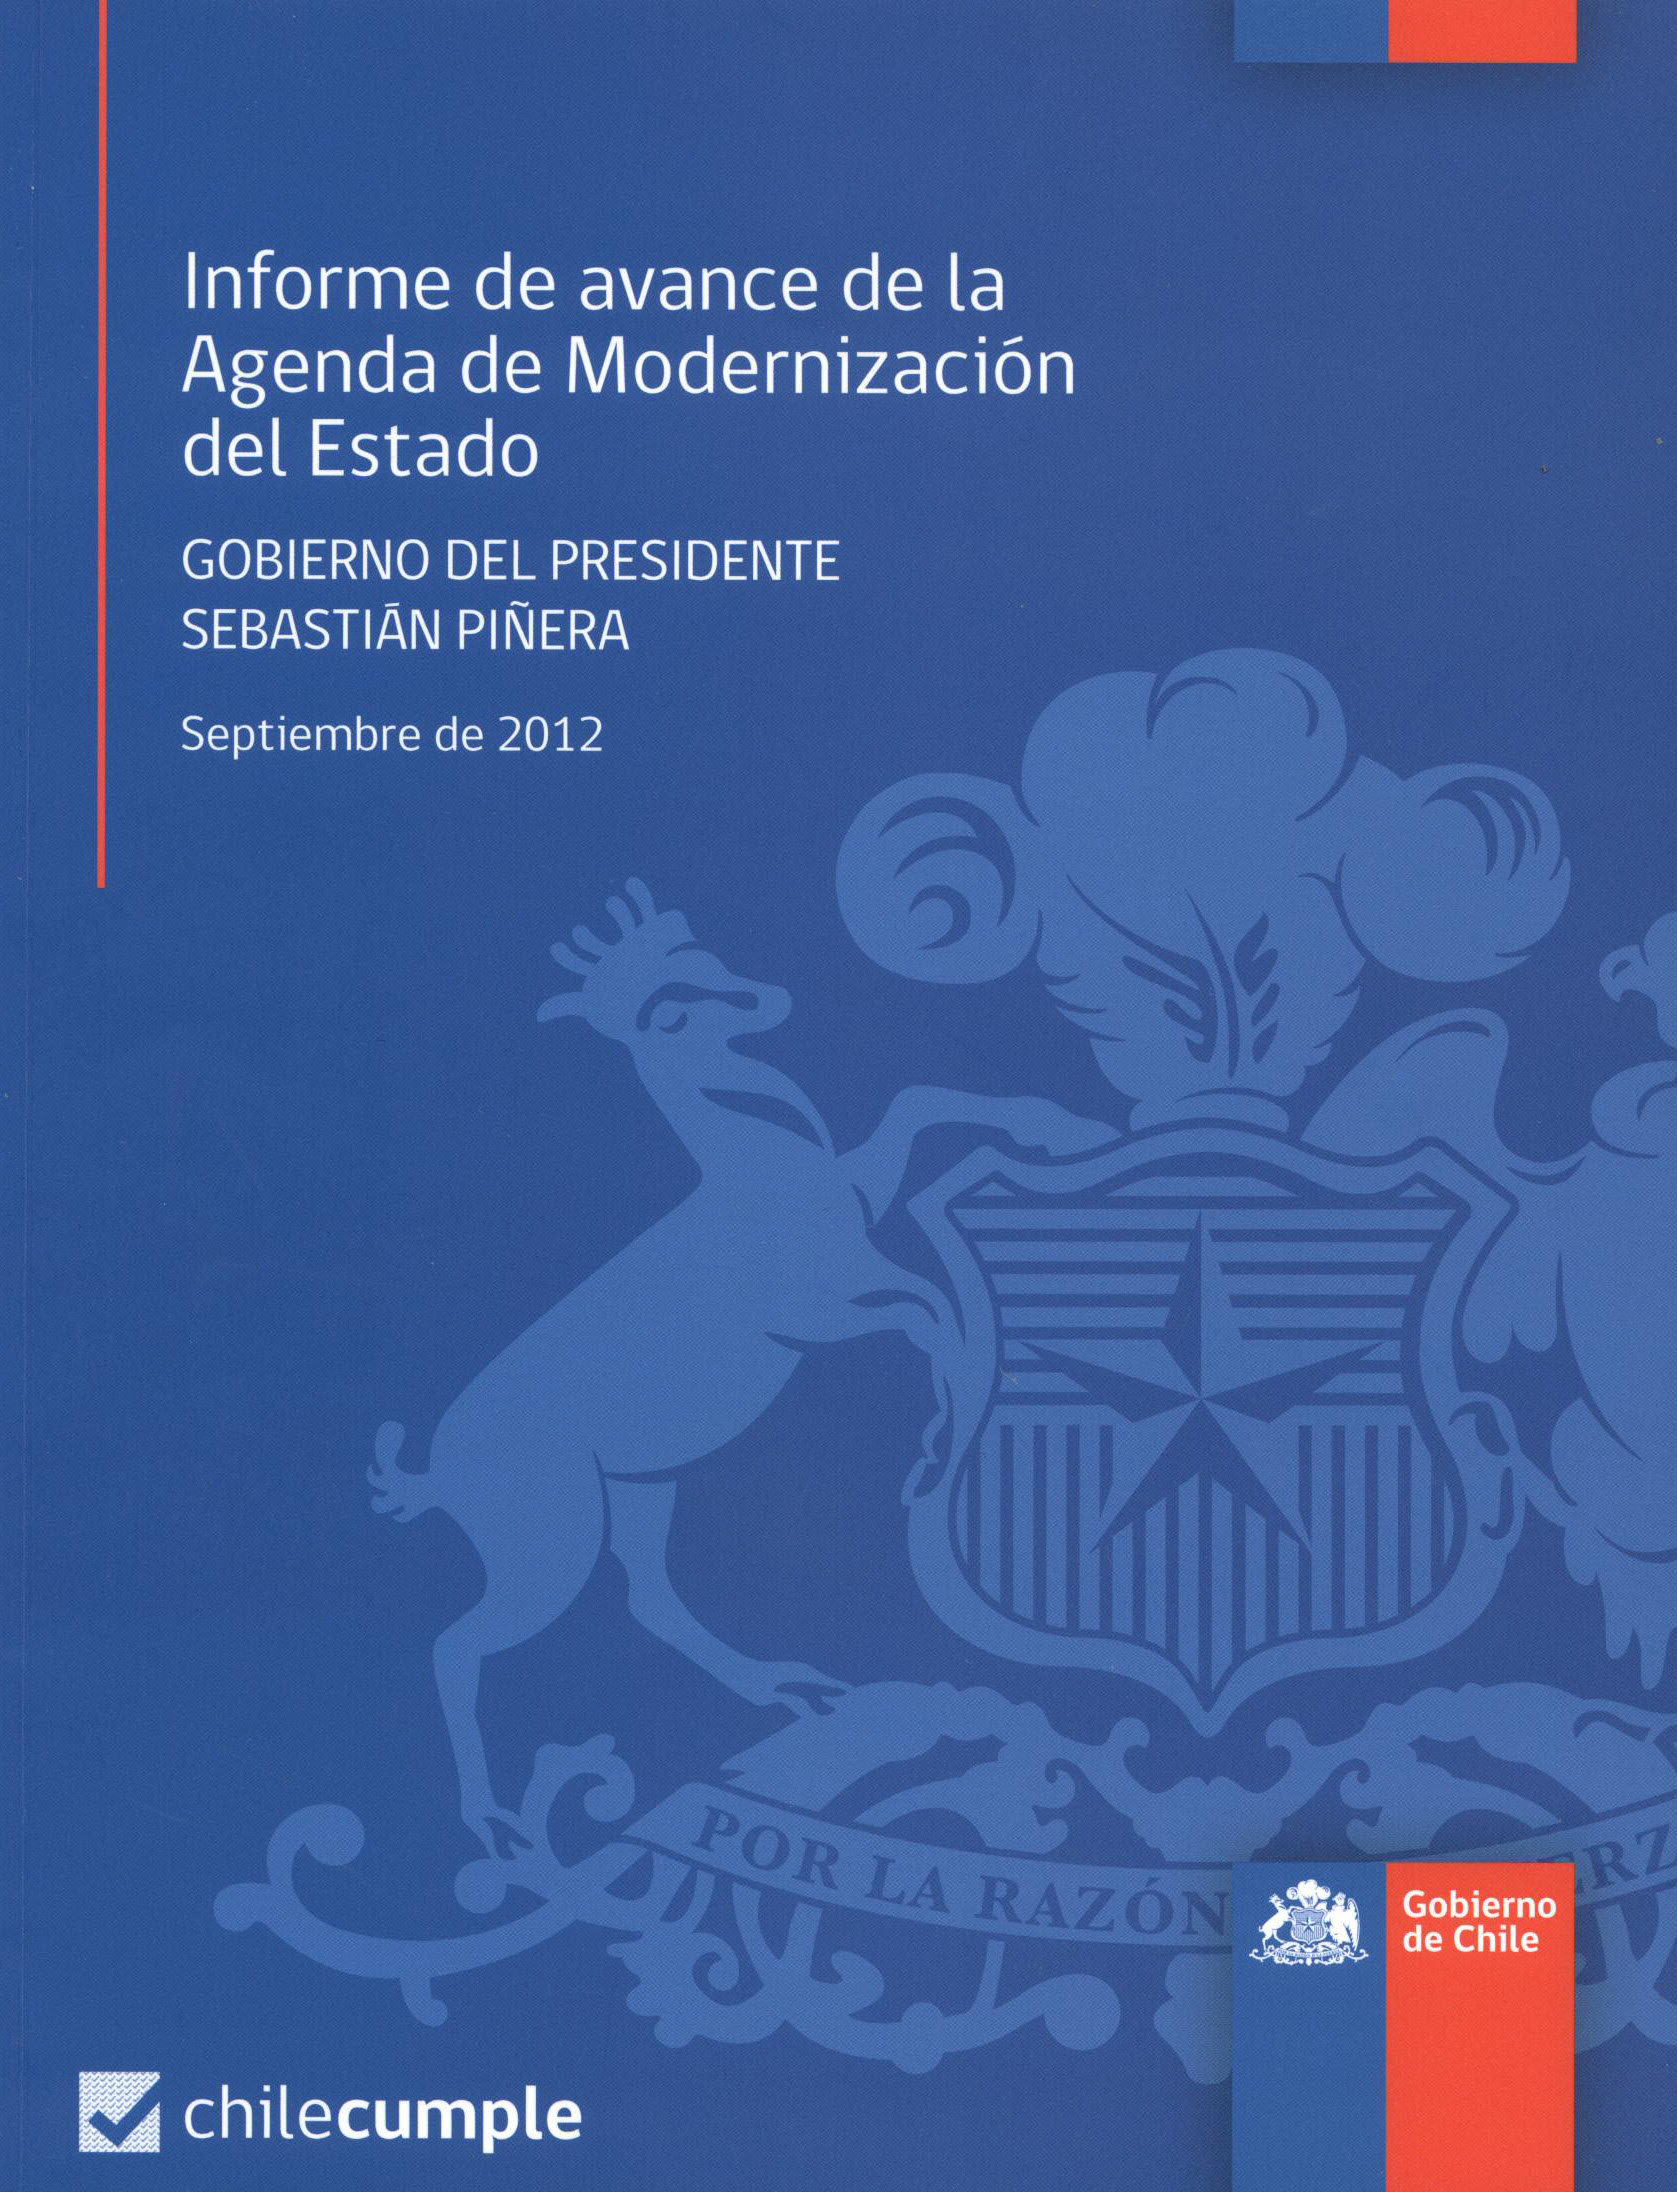 Informe de avance de la modernización del Estad. Gobierno del Presidente Sebastián Piñera Septiembre 2012